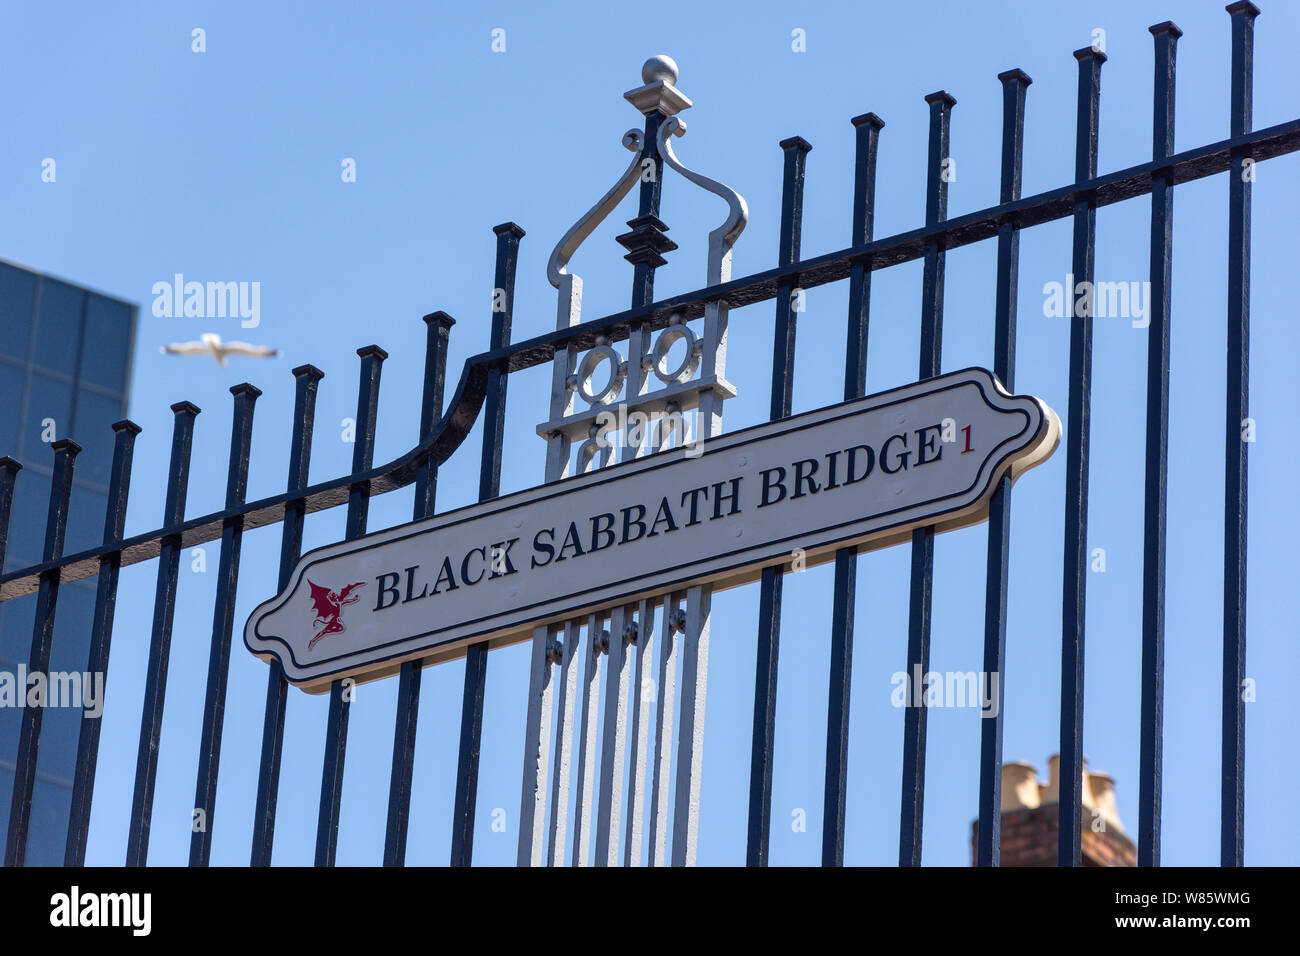 Black Sabbath Bridge signe par le Canal de Worcester et Birmingham, le gaz du bassin de la rue, Birmingham, West Midlands, England, United Kingdom Banque D'Images